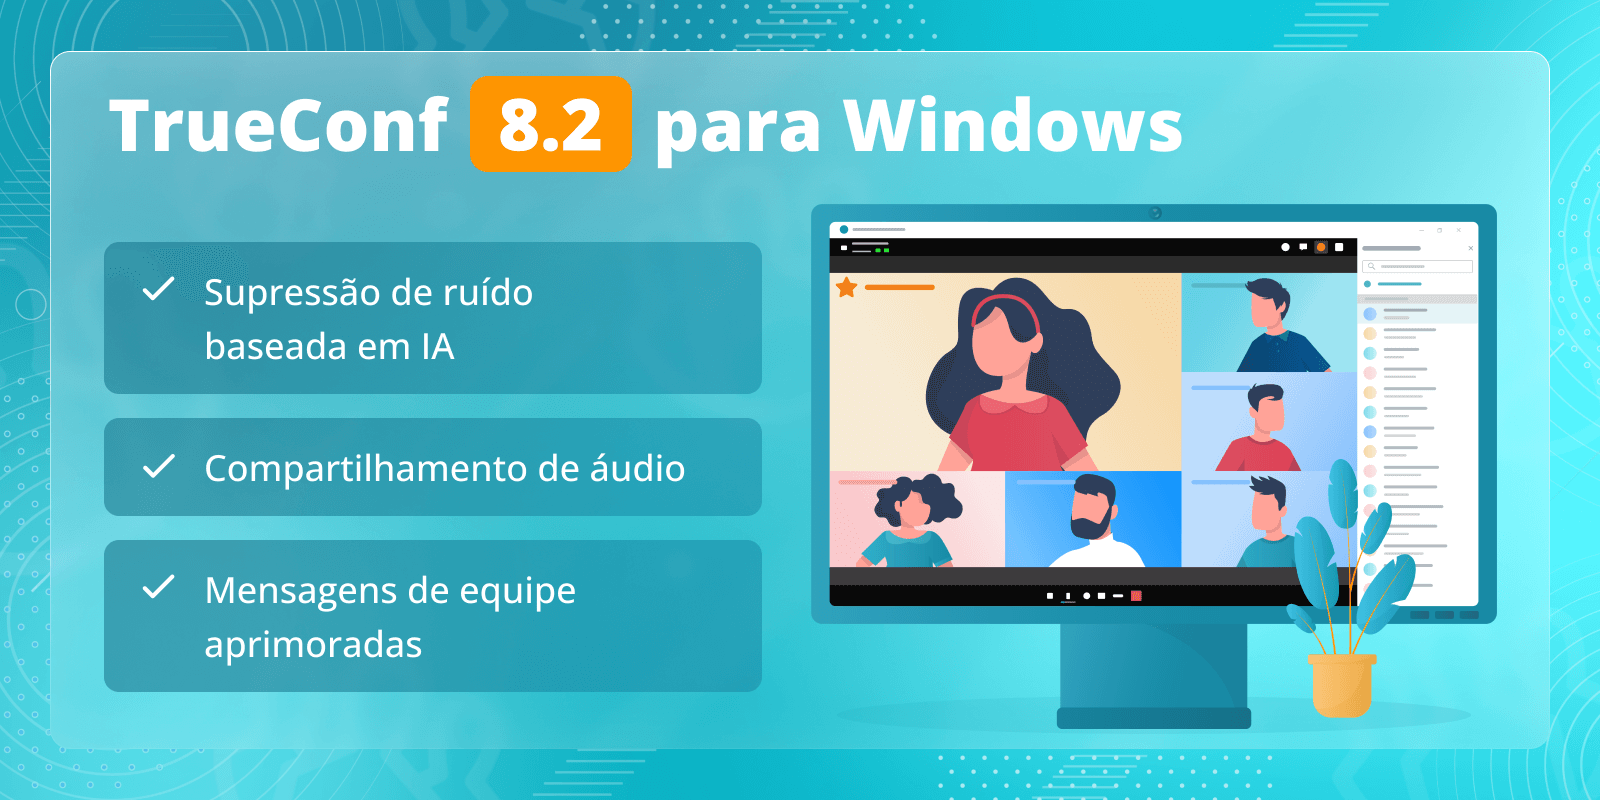 TrueConf 8.2 para Windows: supressão de ruído baseada em IA, mensagens de equipe aprimoradas e compartilhamento de áudio 6